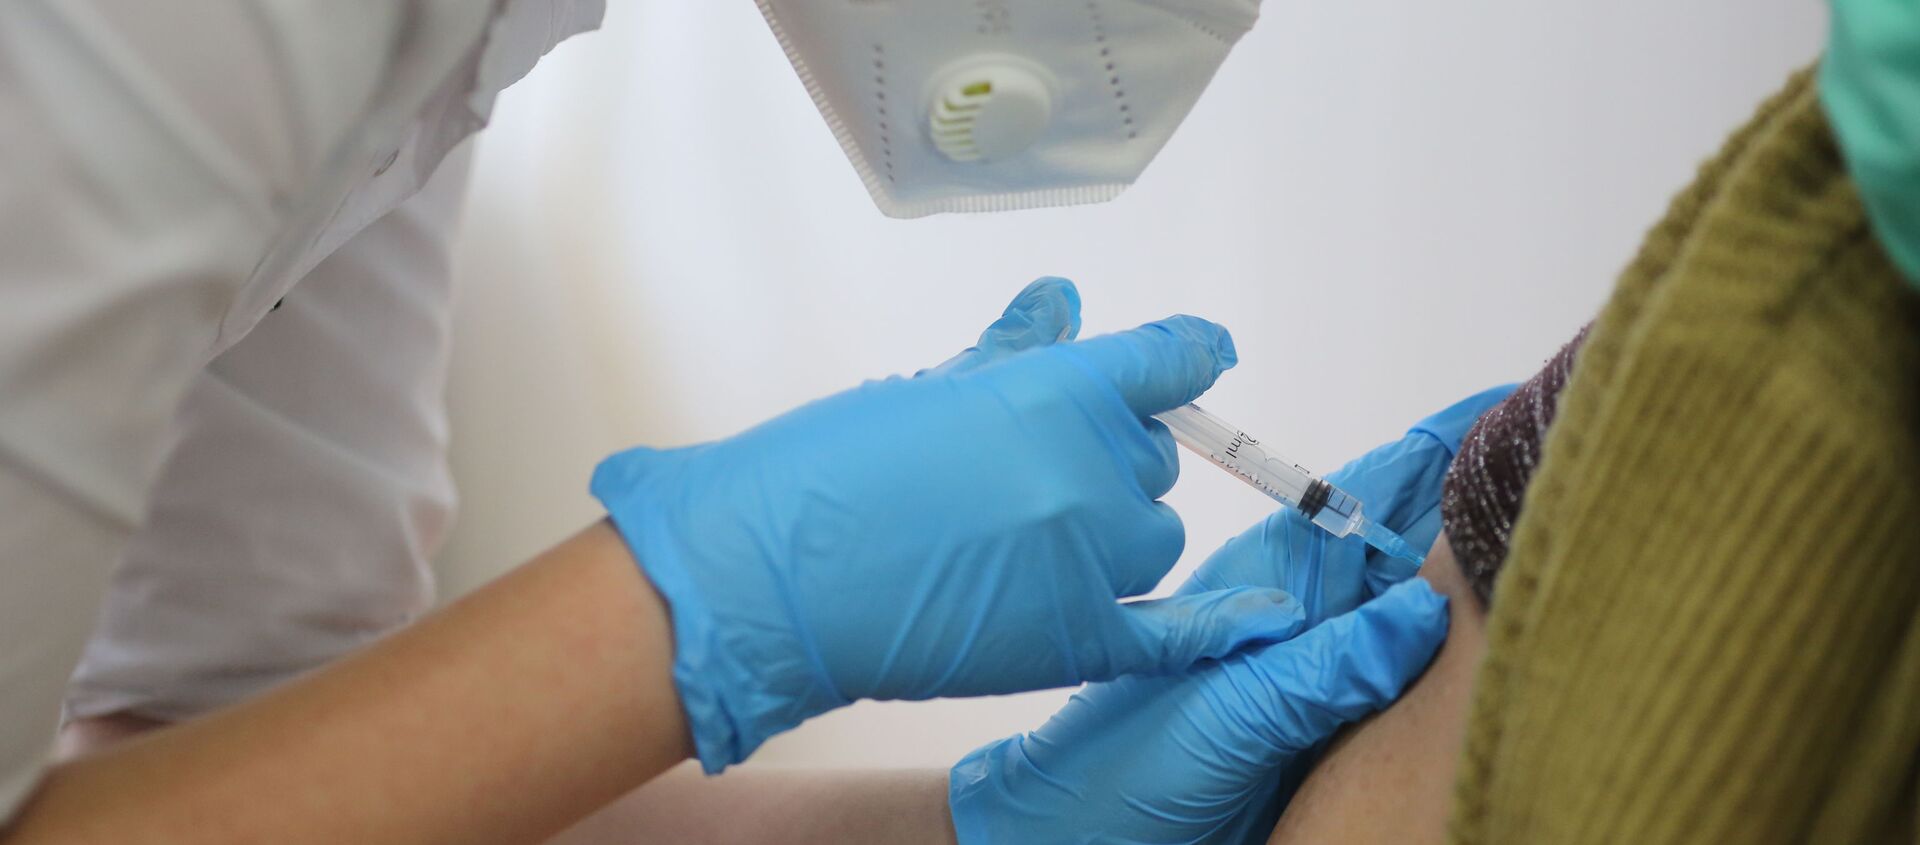 Медсестра делает прививку пациенту от коронавируса вакциной Спутник-V - Sputnik Беларусь, 1920, 25.01.2021